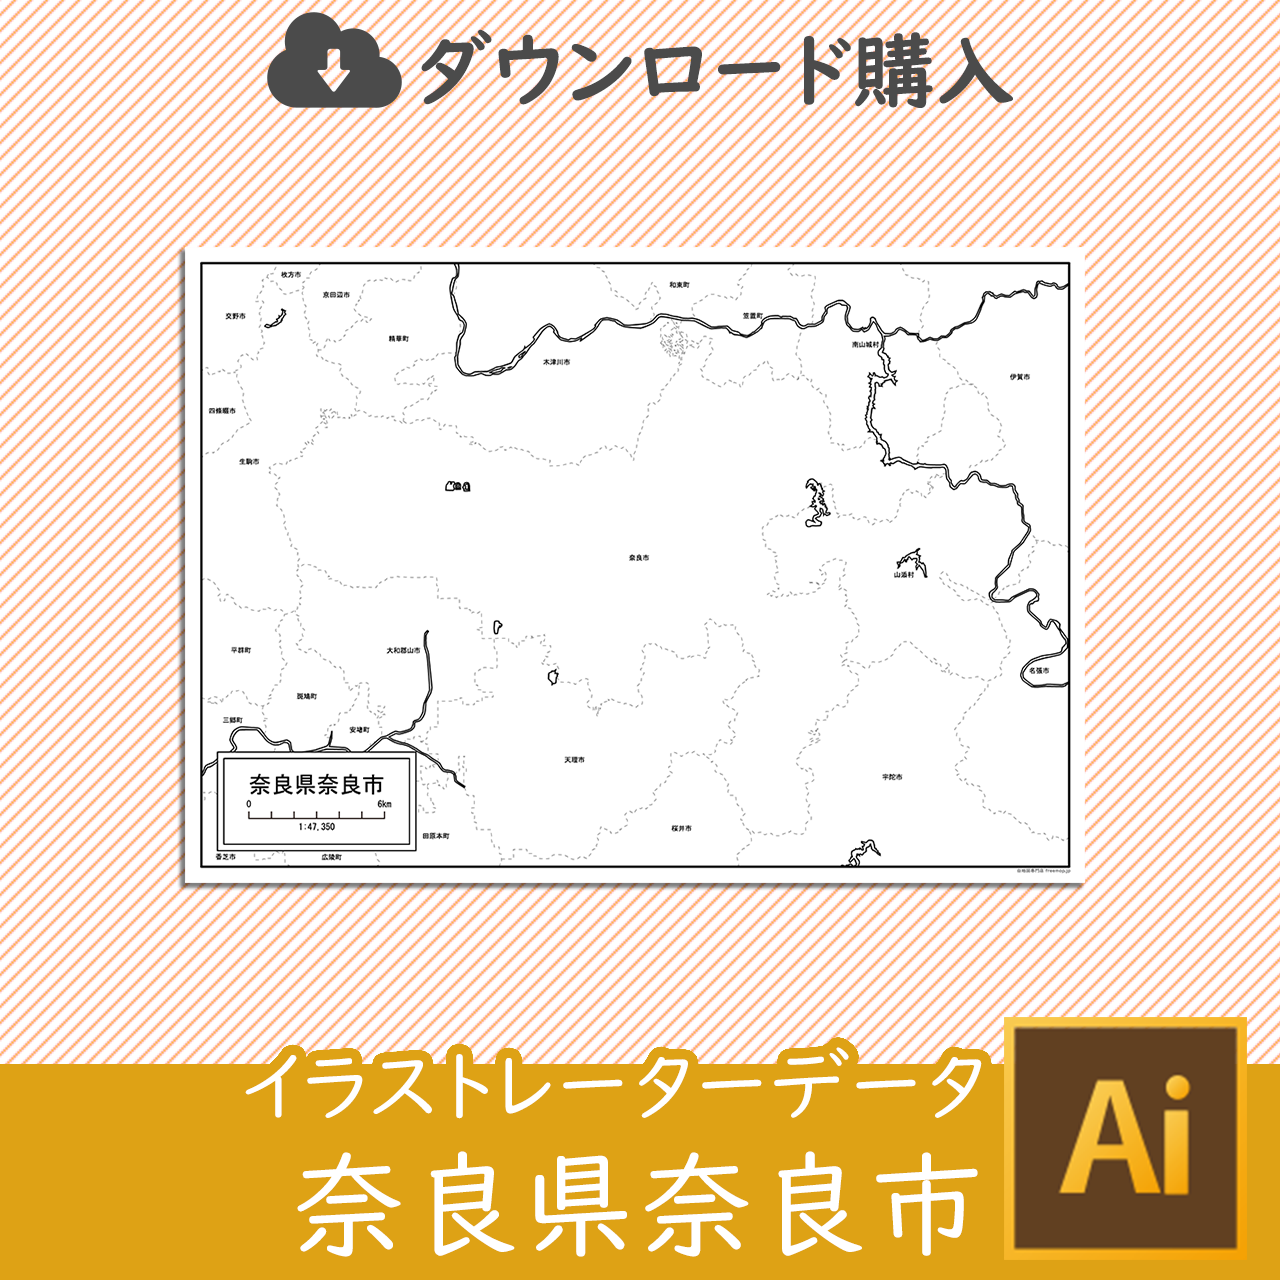 奈良市のaiデータのサムネイル画像